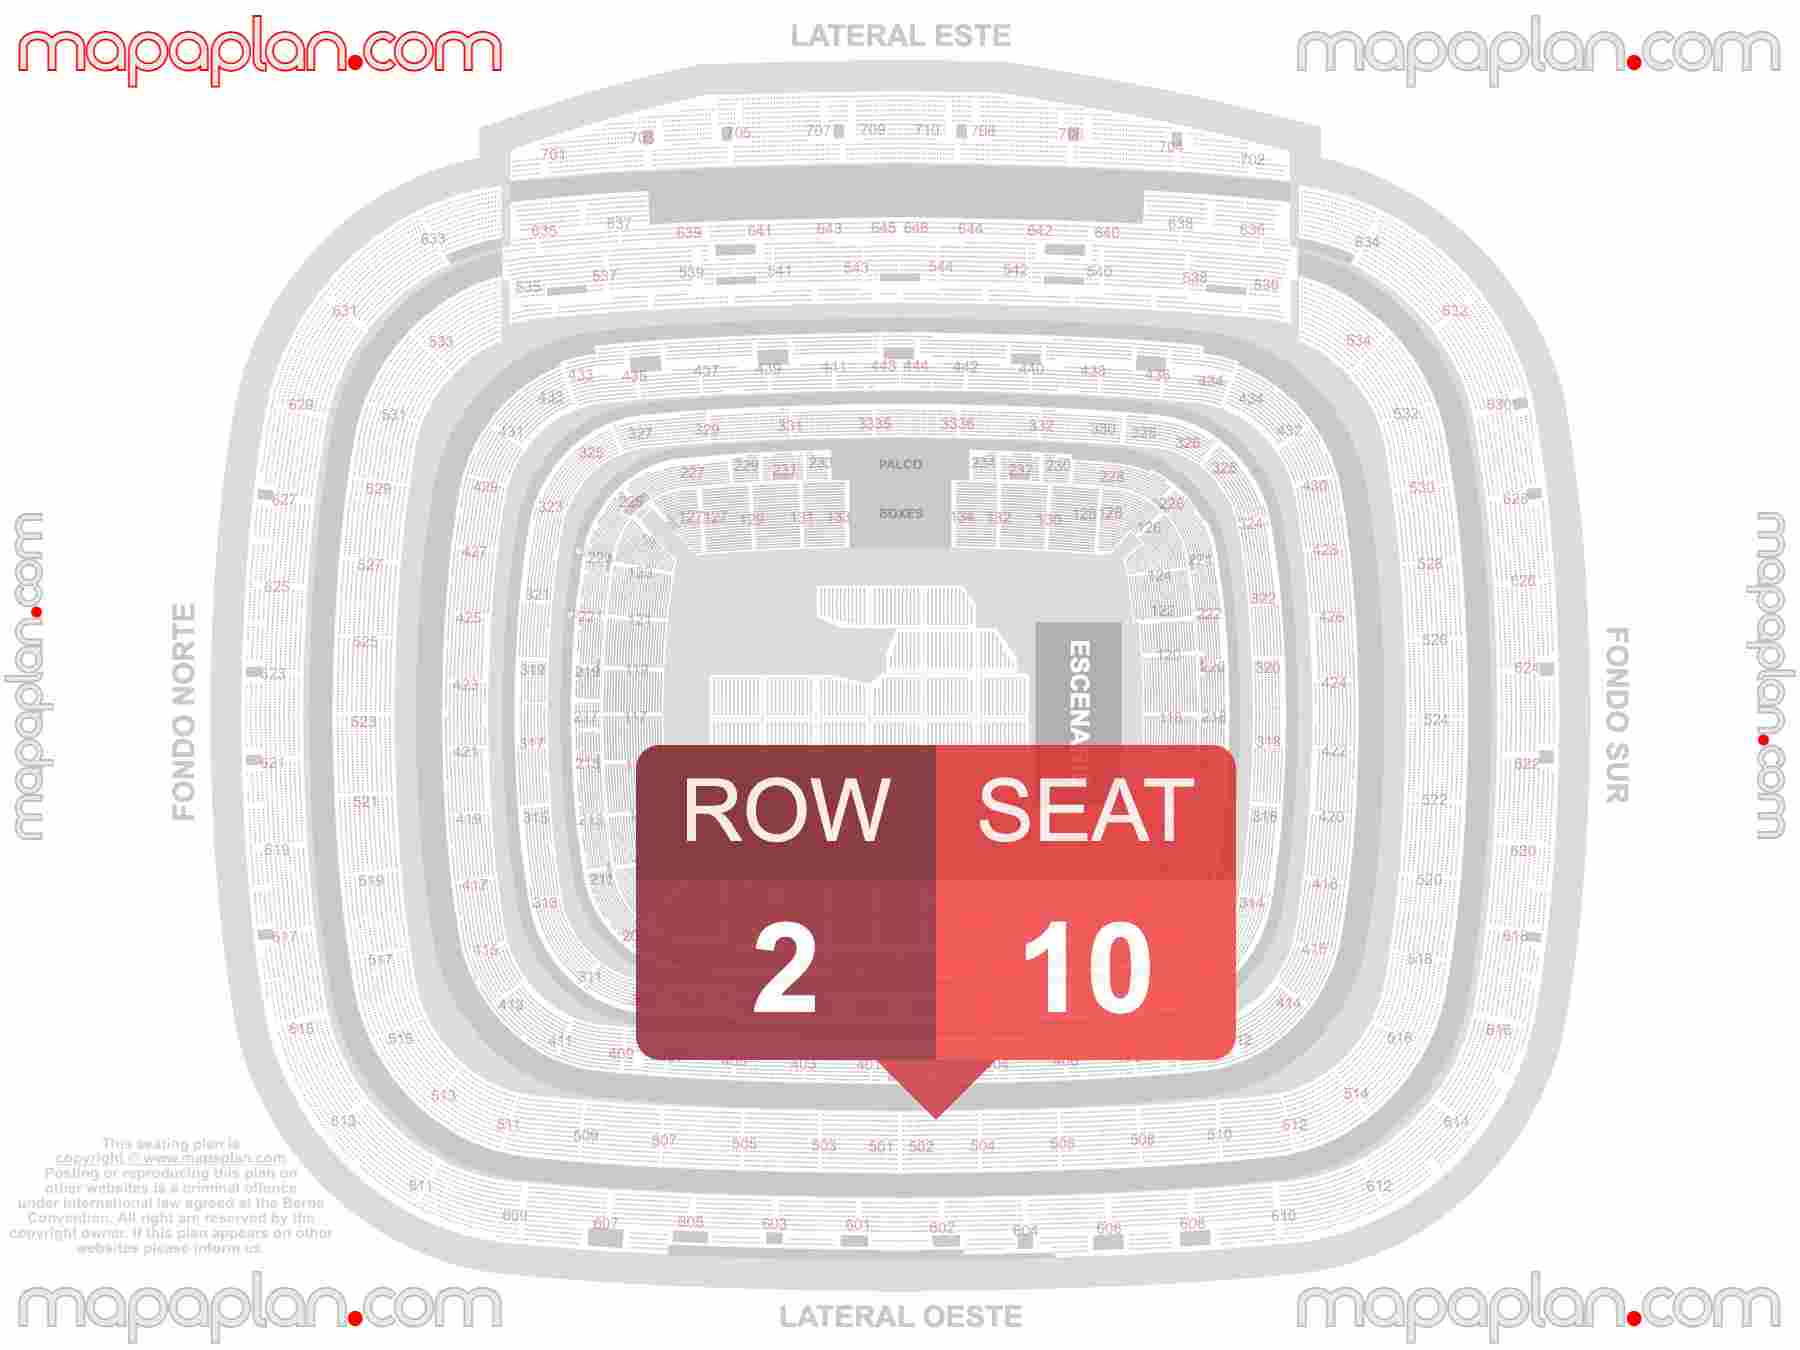 Madrid Santiago Bernabeu Estadio Stadium seating map Concerts (Conciertos mapa plano de asientos con numeros de asiento y fila) inside capacity view arrangement plan - Interactive virtual 3d best seats & rows detailed stadium image configuration layout